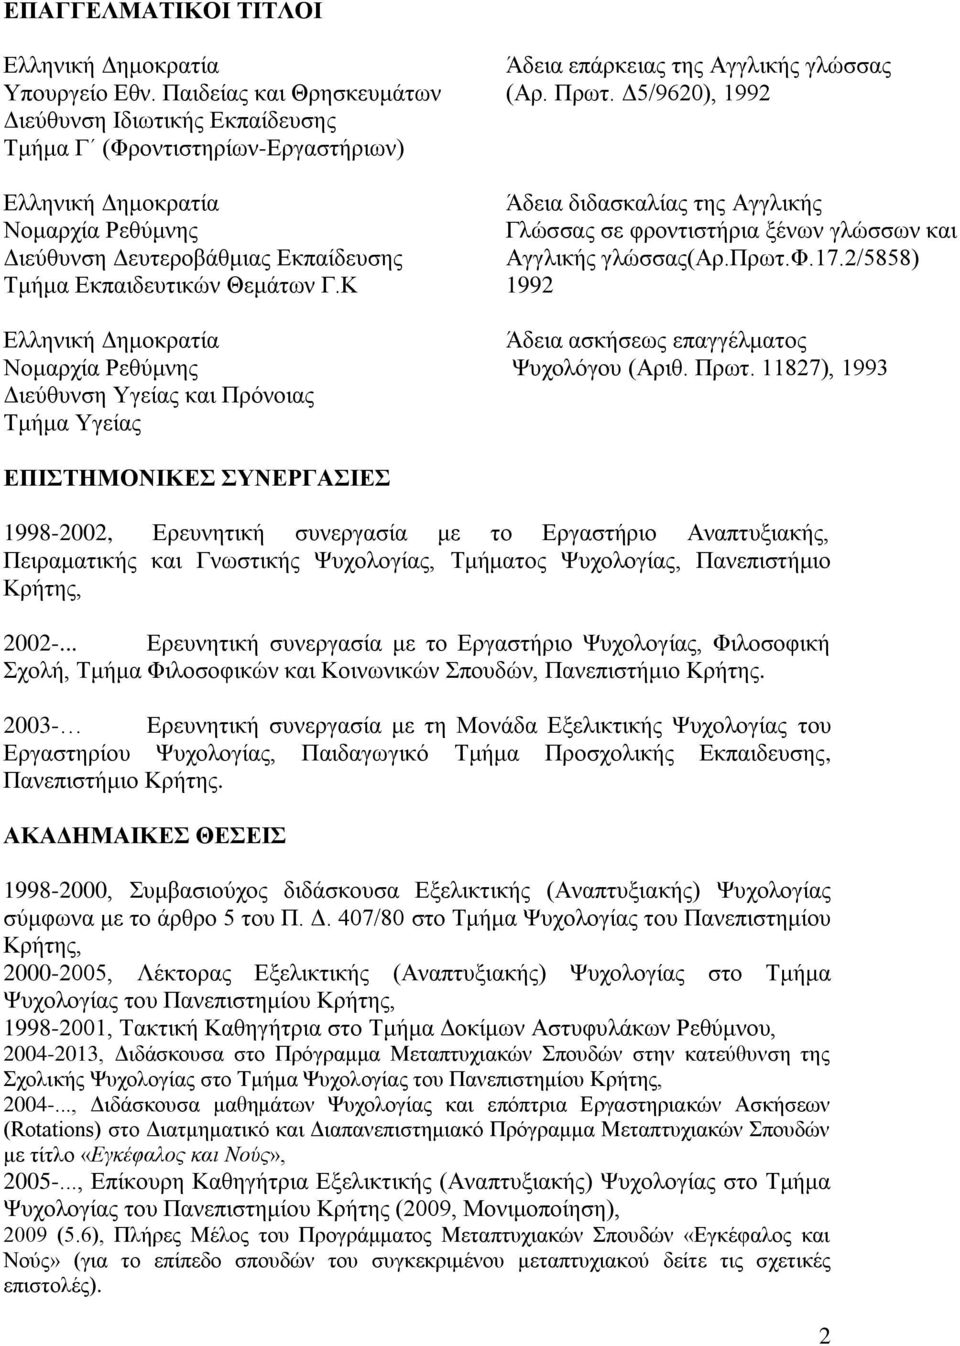 Διεύθυνση Δευτεροβάθμιας Εκπαίδευσης Αγγλικής γλώσσας(αρ.πρωτ.φ.17.2/5858) Τμήμα Εκπαιδευτικών Θεμάτων Γ.Κ 1992 Ελληνική Δημοκρατία Άδεια ασκήσεως επαγγέλματος Νομαρχία Ρεθύμνης Ψυχολόγου (Αριθ. Πρωτ.